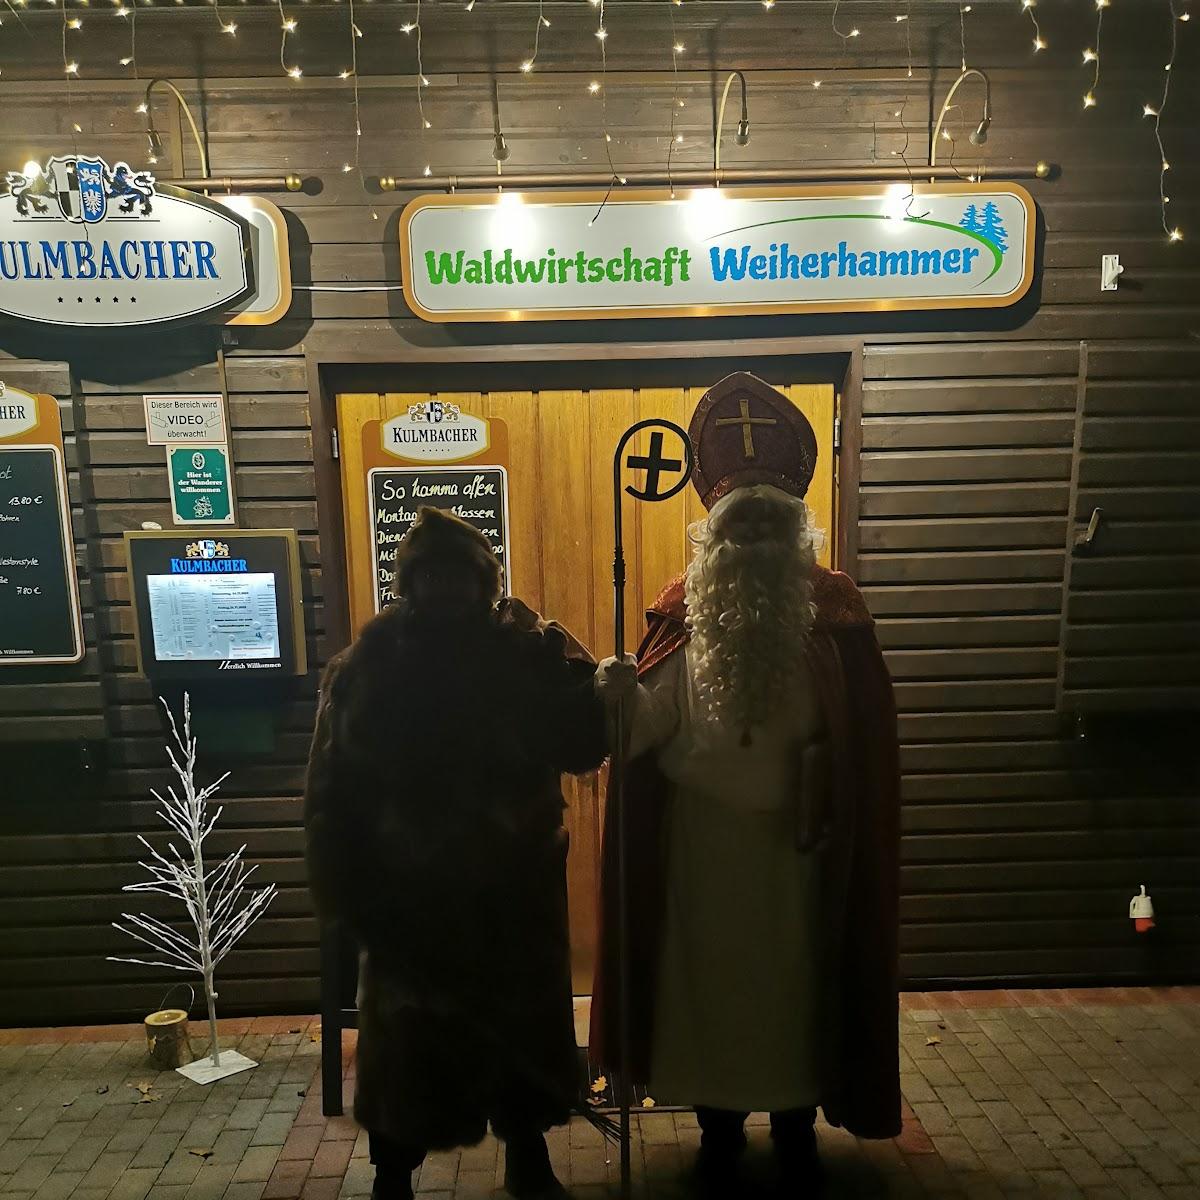 Restaurant "Waldwirtschaft" in Weiherhammer